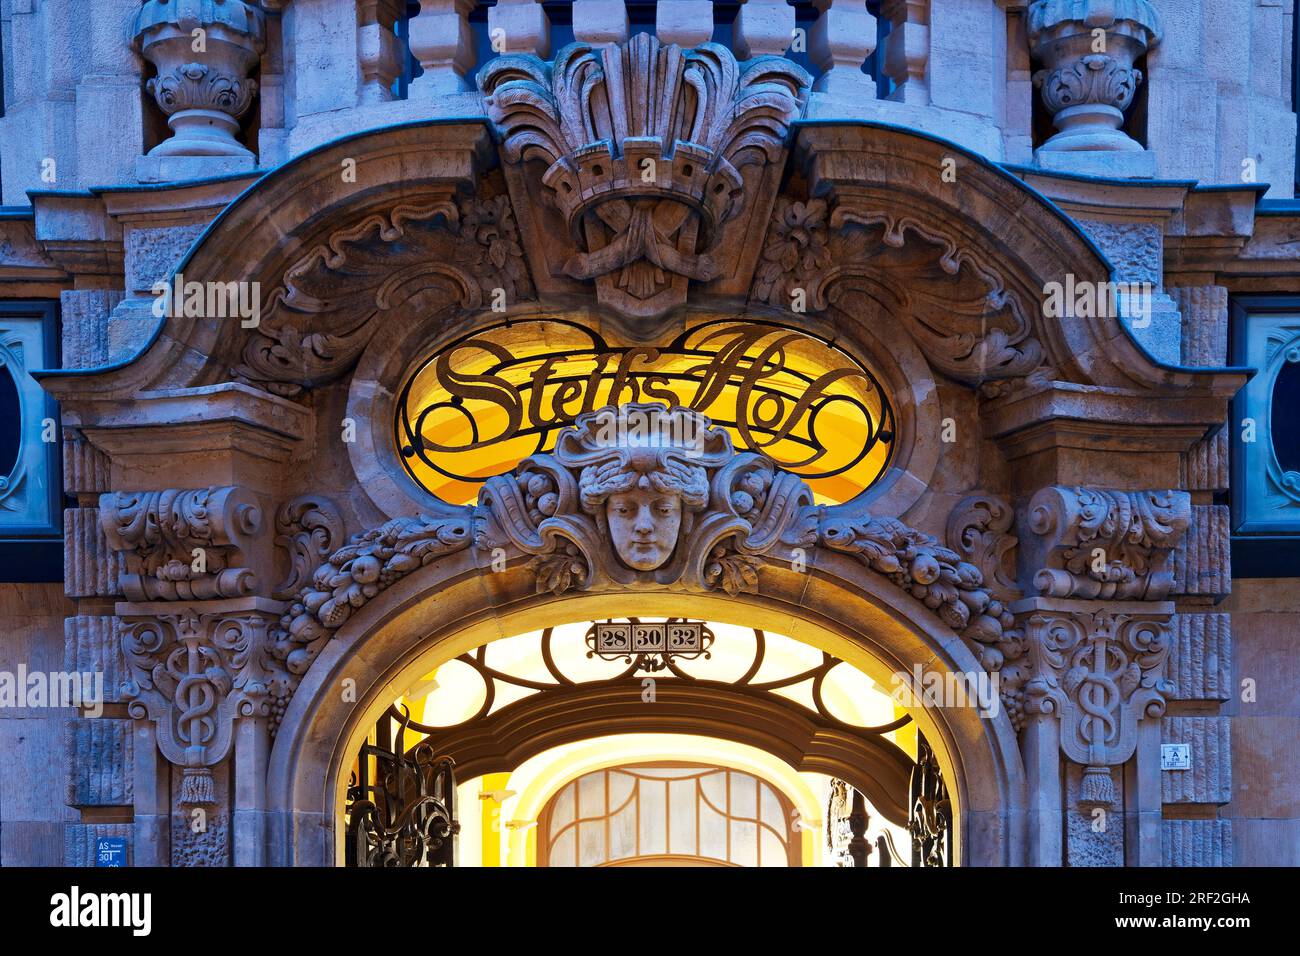 Décoration architecturale néo-baroque sur le portail de Steibs Hof à l'heure bleue, Allemagne, Saxe, Leipzig Banque D'Images